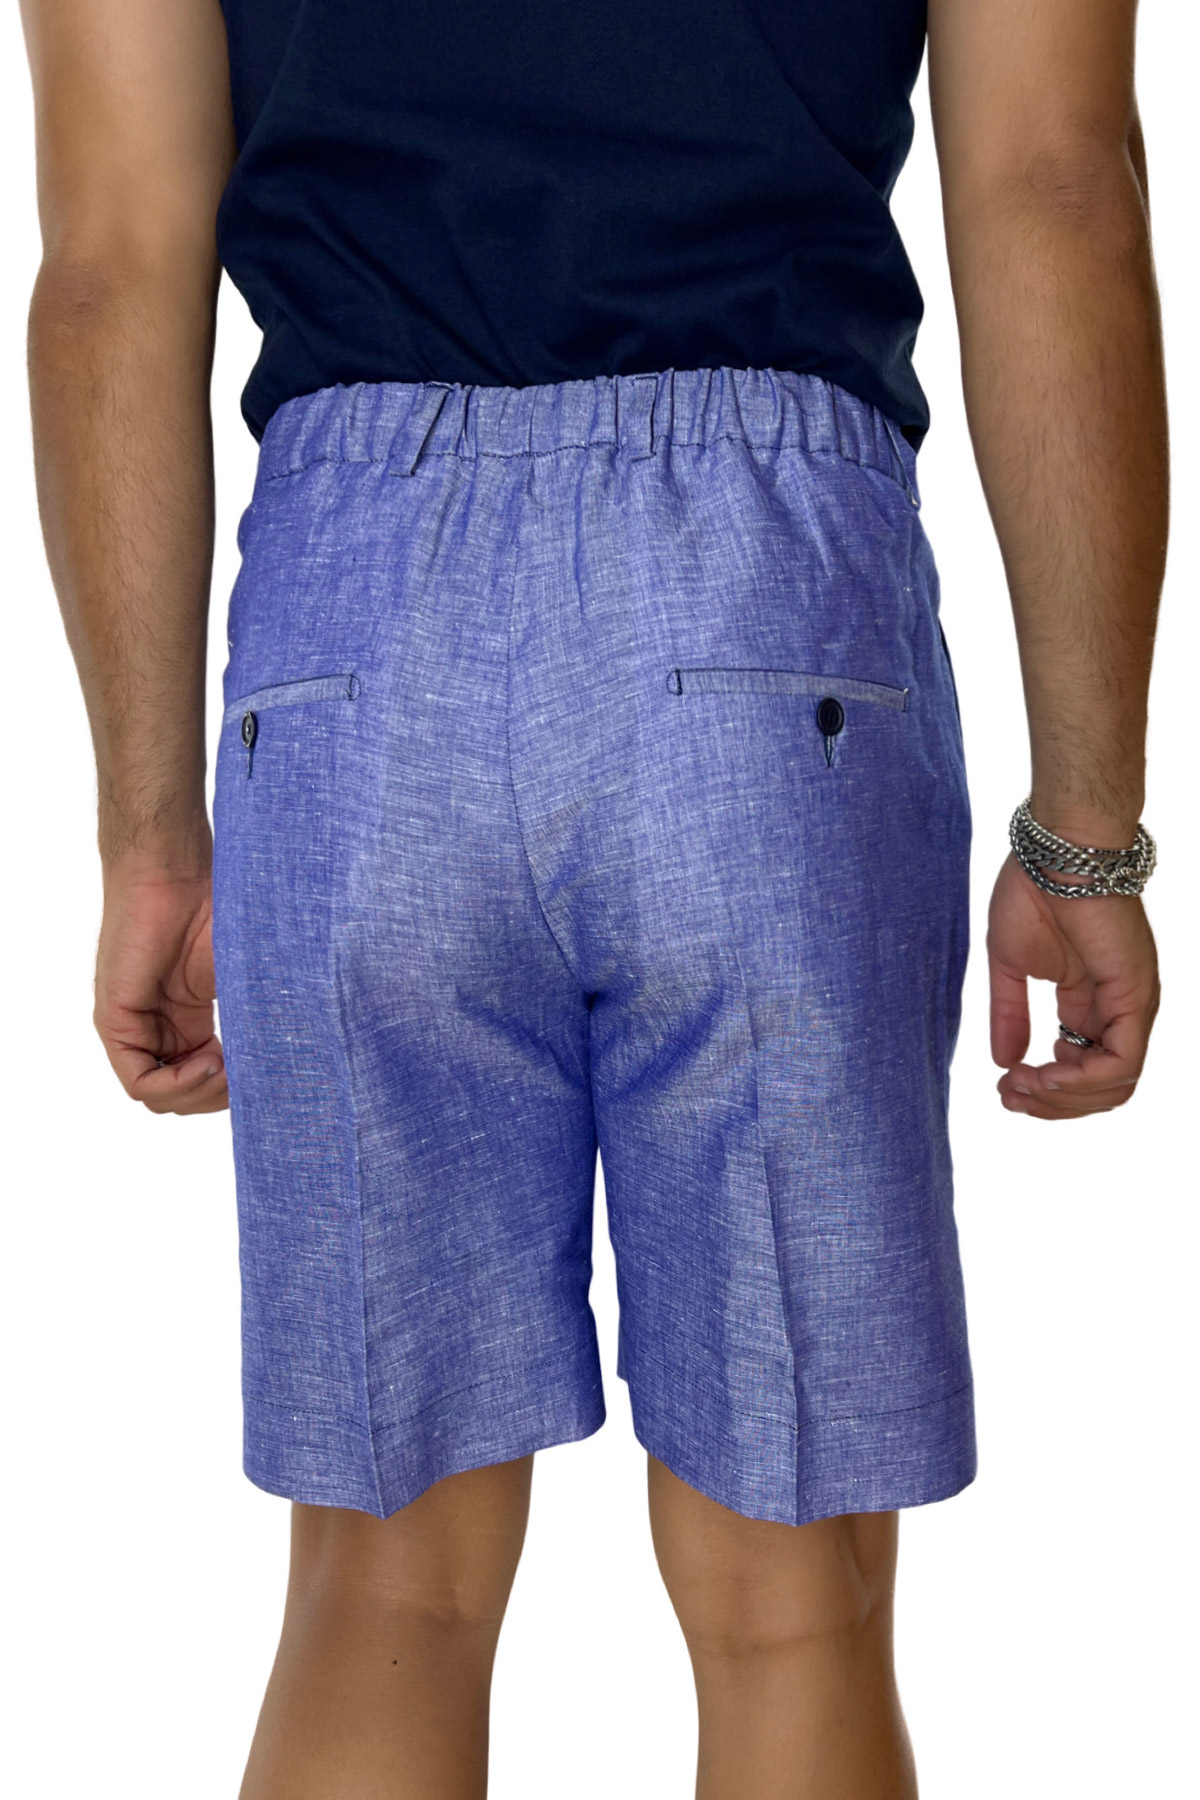 Bermuda uomo royal blu in lino e cotone con mezza coulisse doppia pinces e tasca america